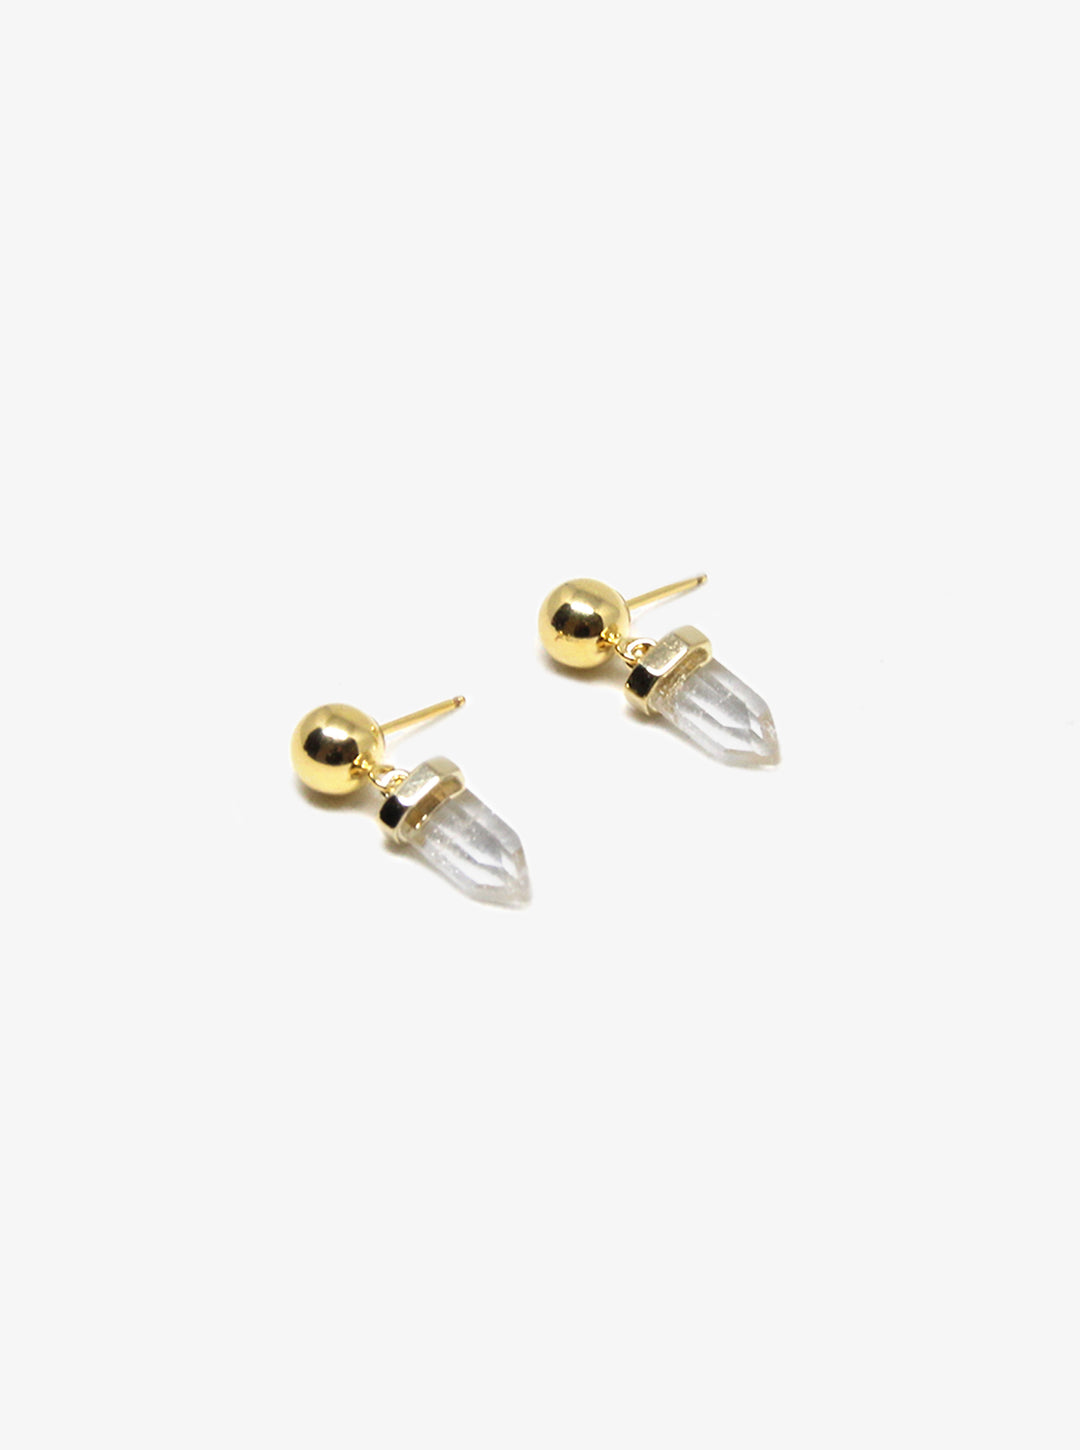 llayers-jewelry-quartz-crystal-gold-earrings-brooklyn-newyork-F7